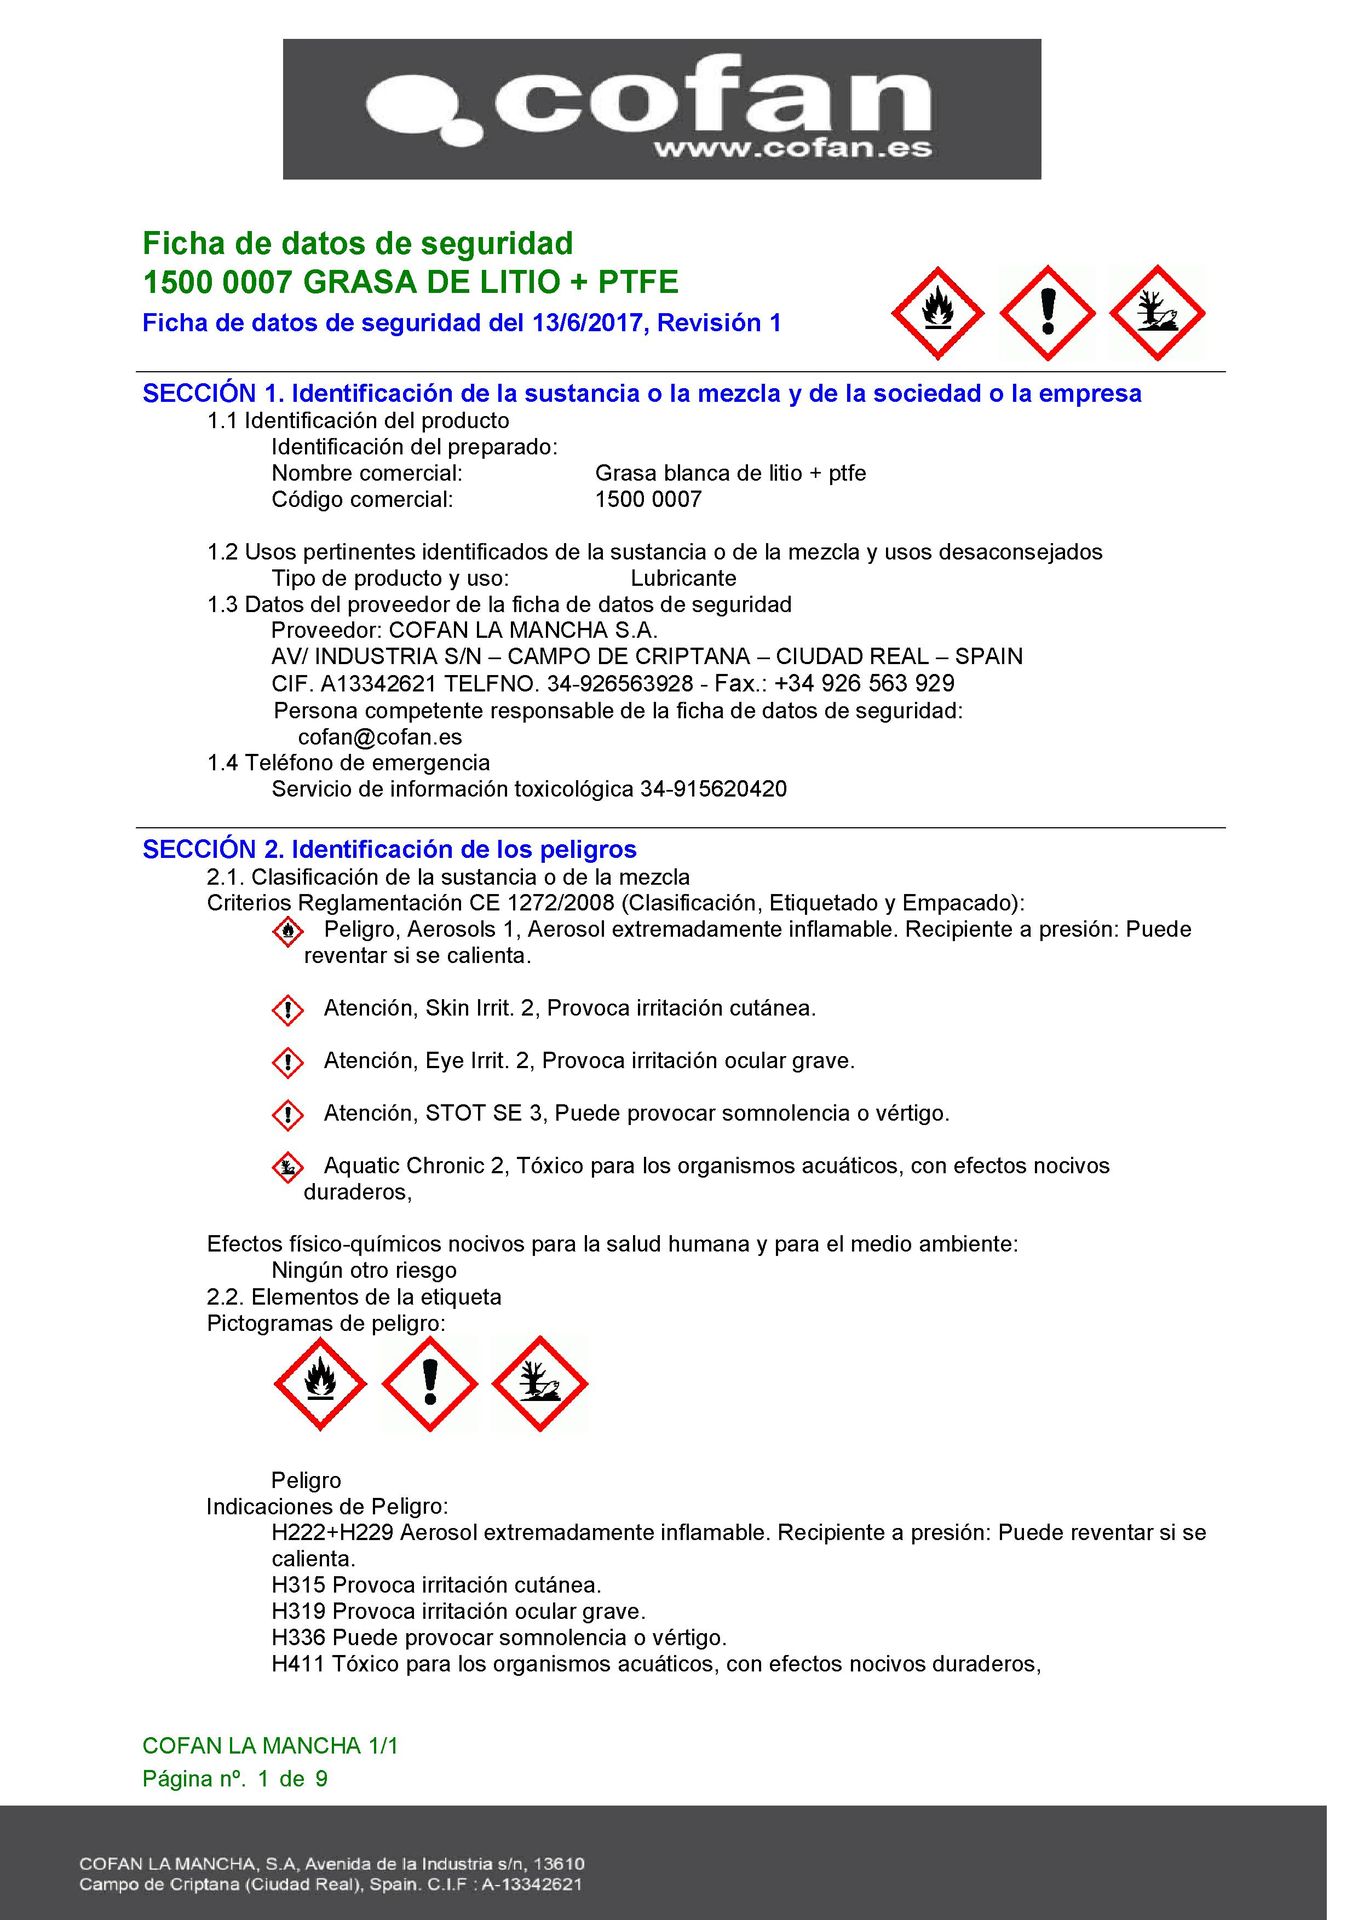 Hoja de Seguridad de Spray Grasa de Litio Blanca + PTFE 400 ml Ref. 15000007